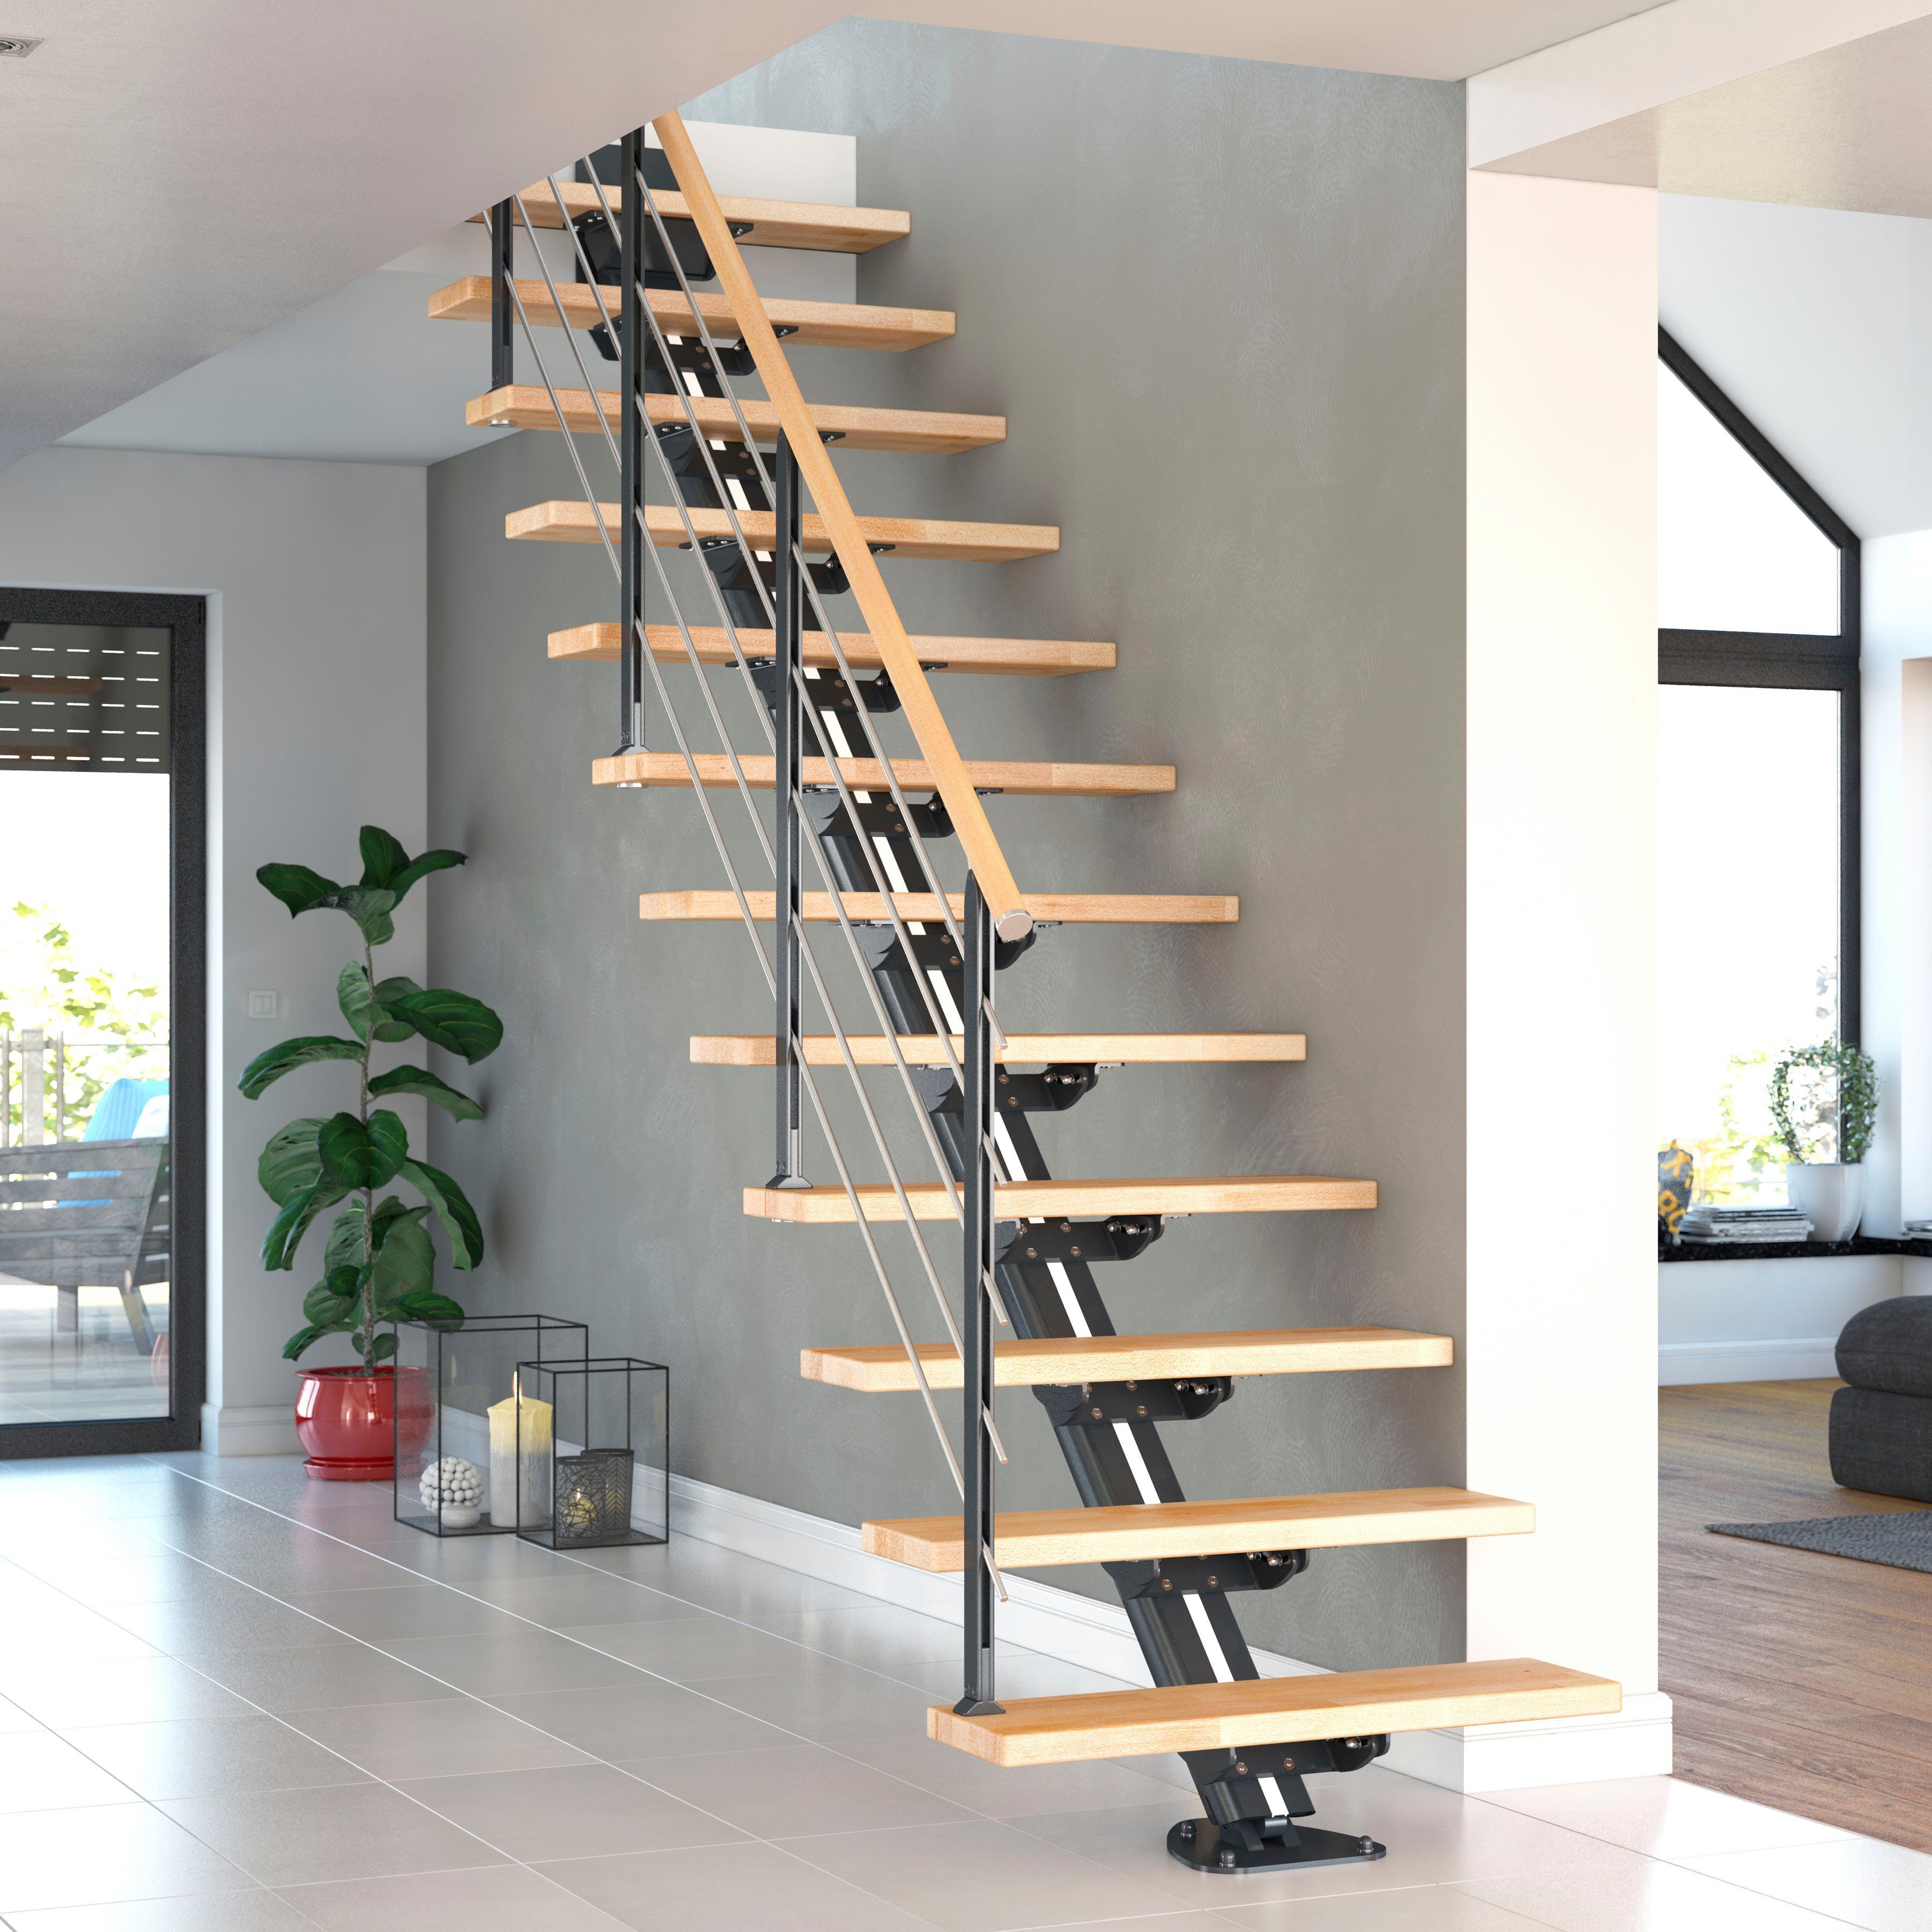 Dolle Mittelholmtreppe Sydney, für Geschosshöhen bis 292 cm, Stufen offen, Holzkomponenten geölt, Unterkonstruktion und Pfosten pulverbeschichtet